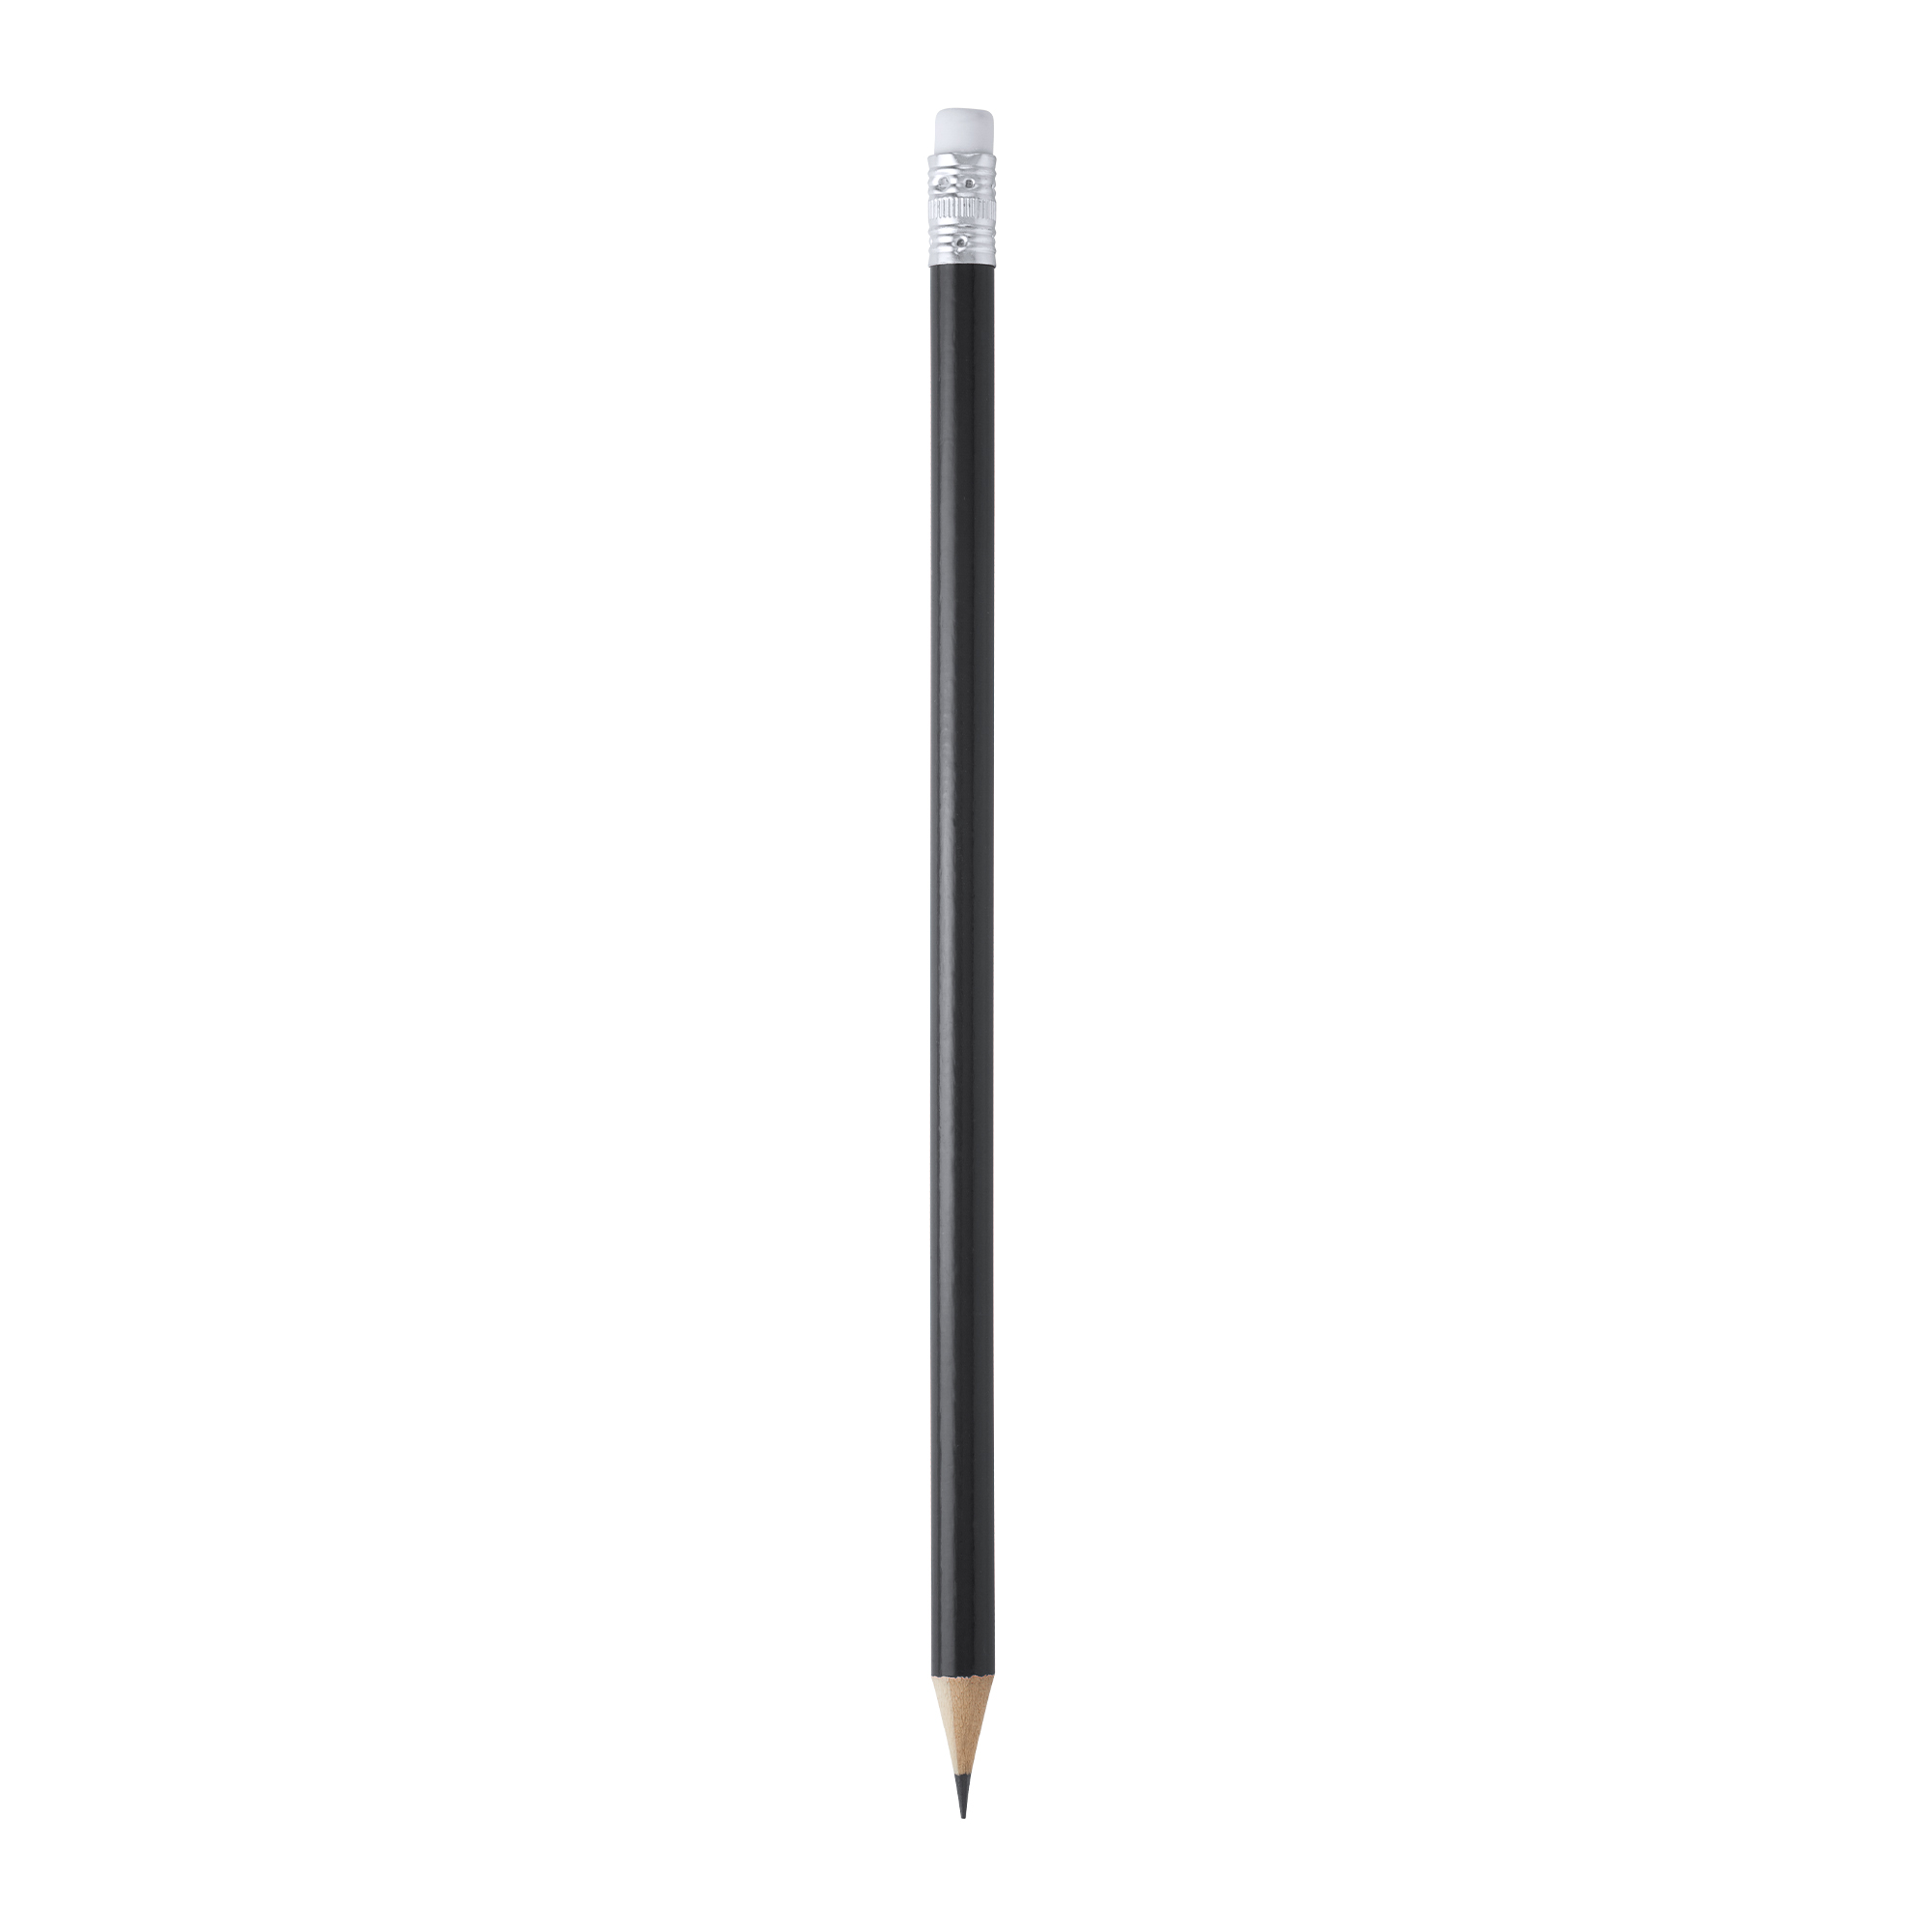 5020-matita-in-legno-nero.jpg